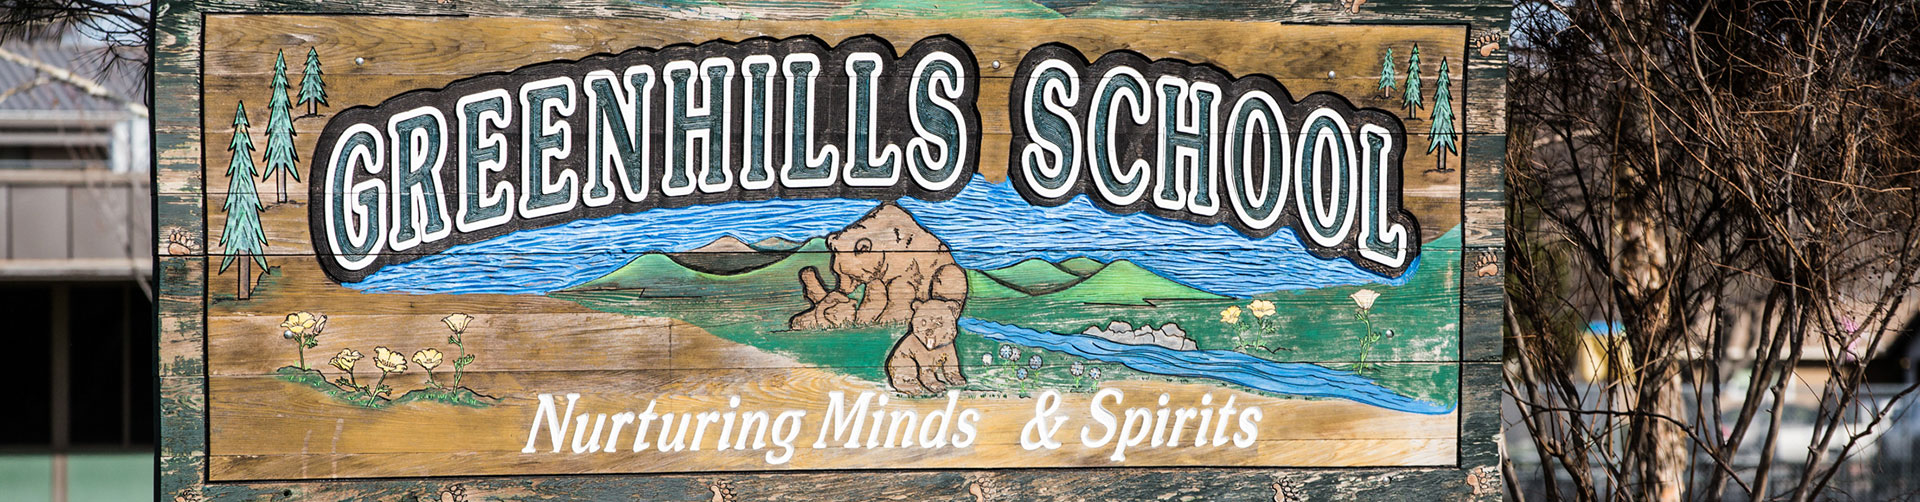 Greenhills School banner - Nurturing Minds and Spirits